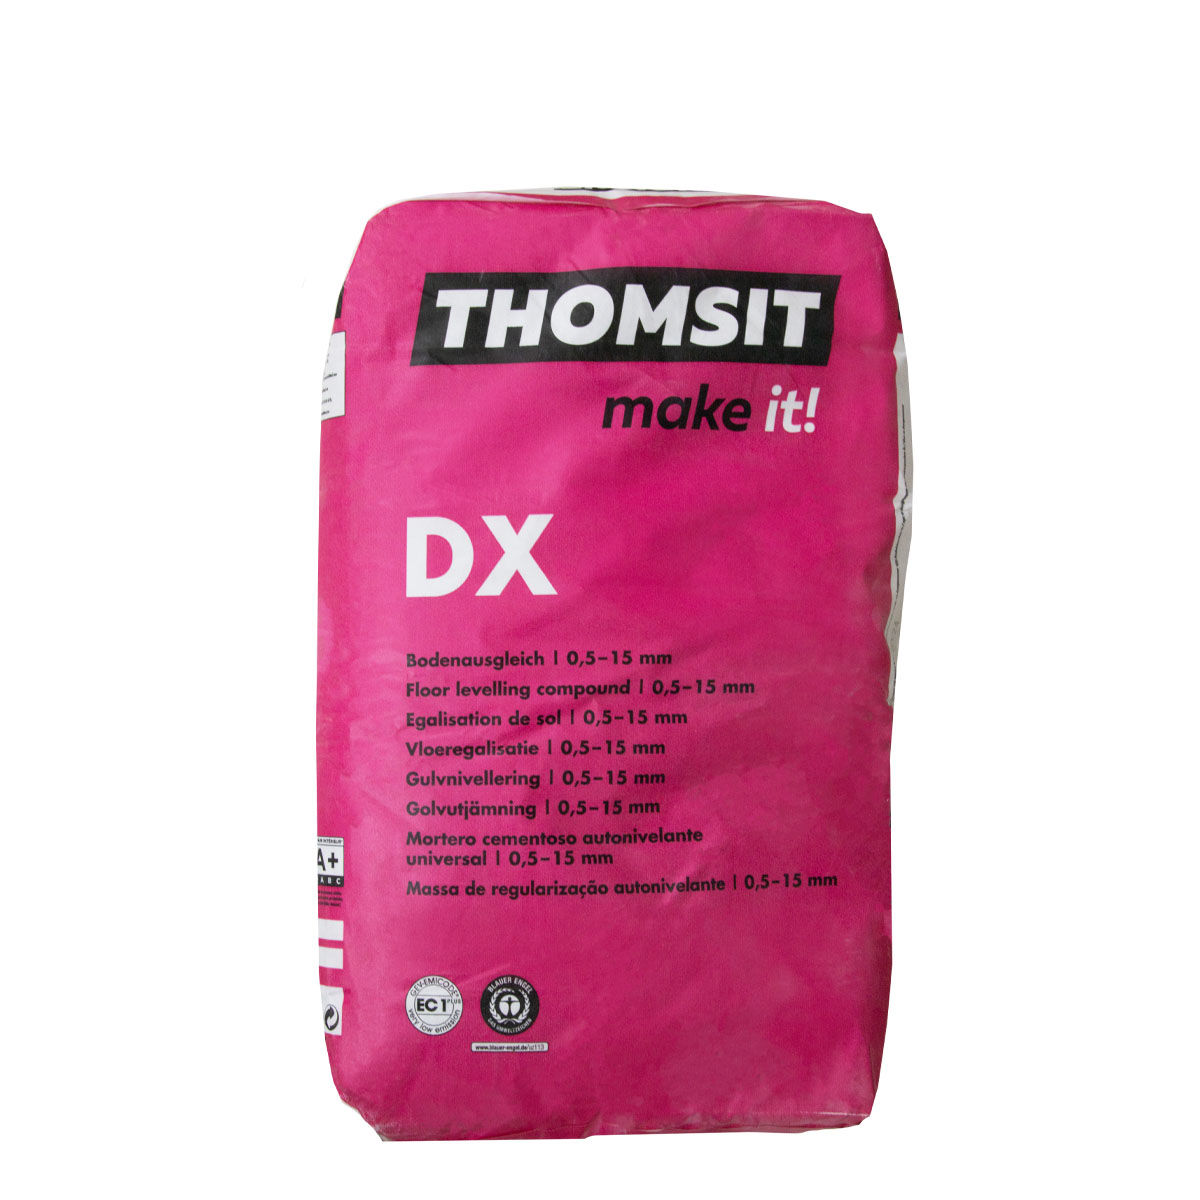 thomsit_makeit_dx_bodenausgleich_25kg_gross